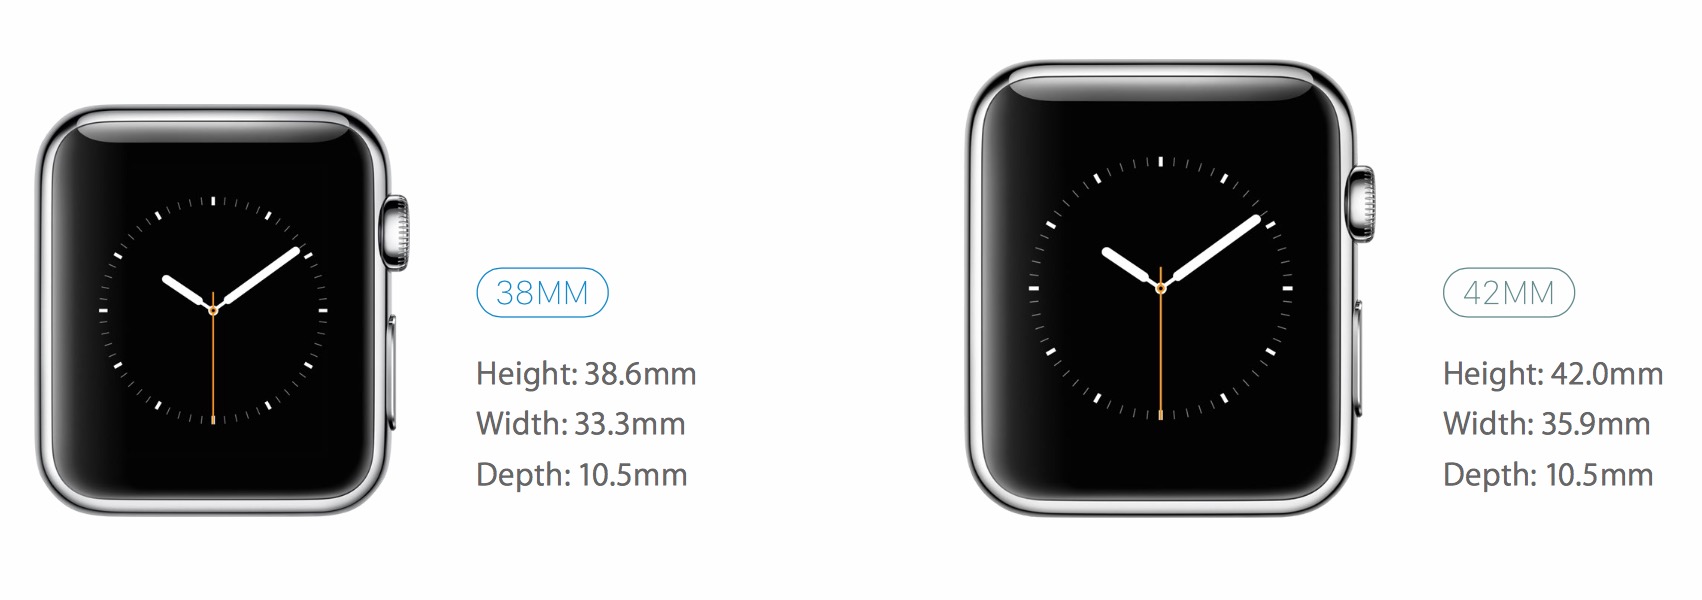 Проверить номер часов apple. Размер экрана часов Apple IWATCH 7 В мм. Размеры Apple watch 7 41. Apple watch 3 42 размер дисплея. Часы Apple watch 7 45mm размер дисплея.